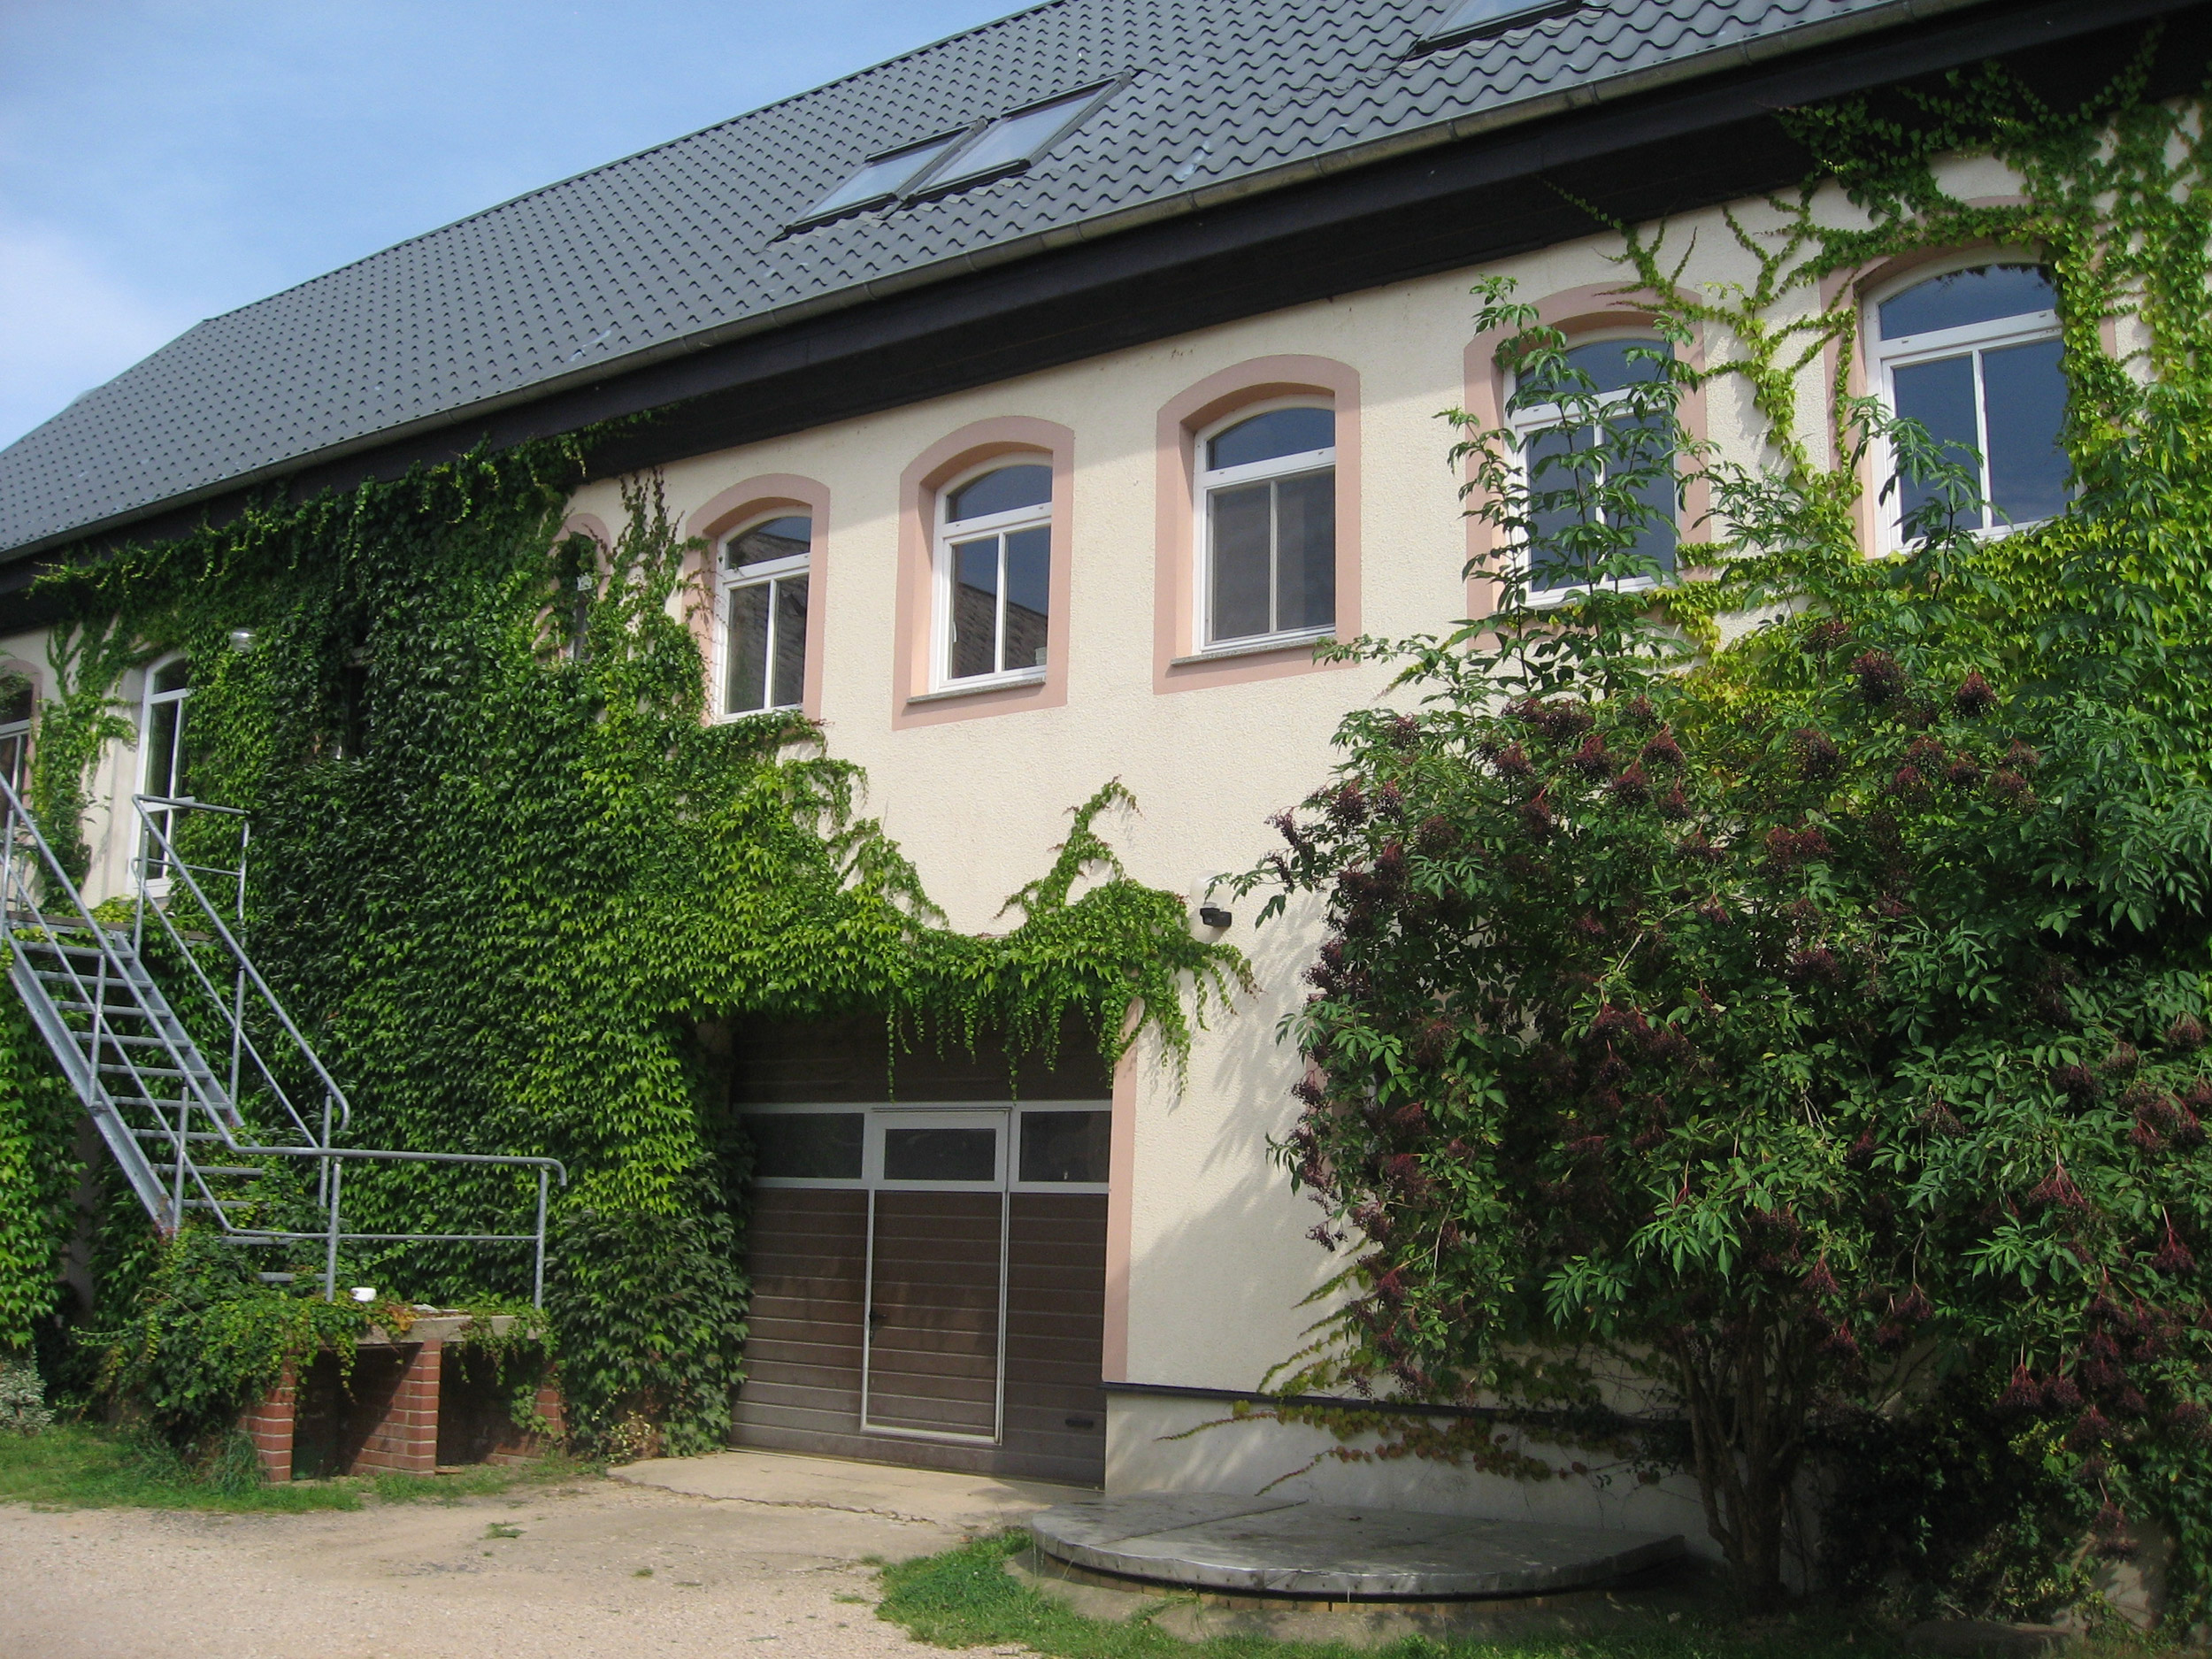 zweistöckiges Haus mit Garagentor im Erdgeschoss und durch Kletterpflanzen bewachsene Hauswände